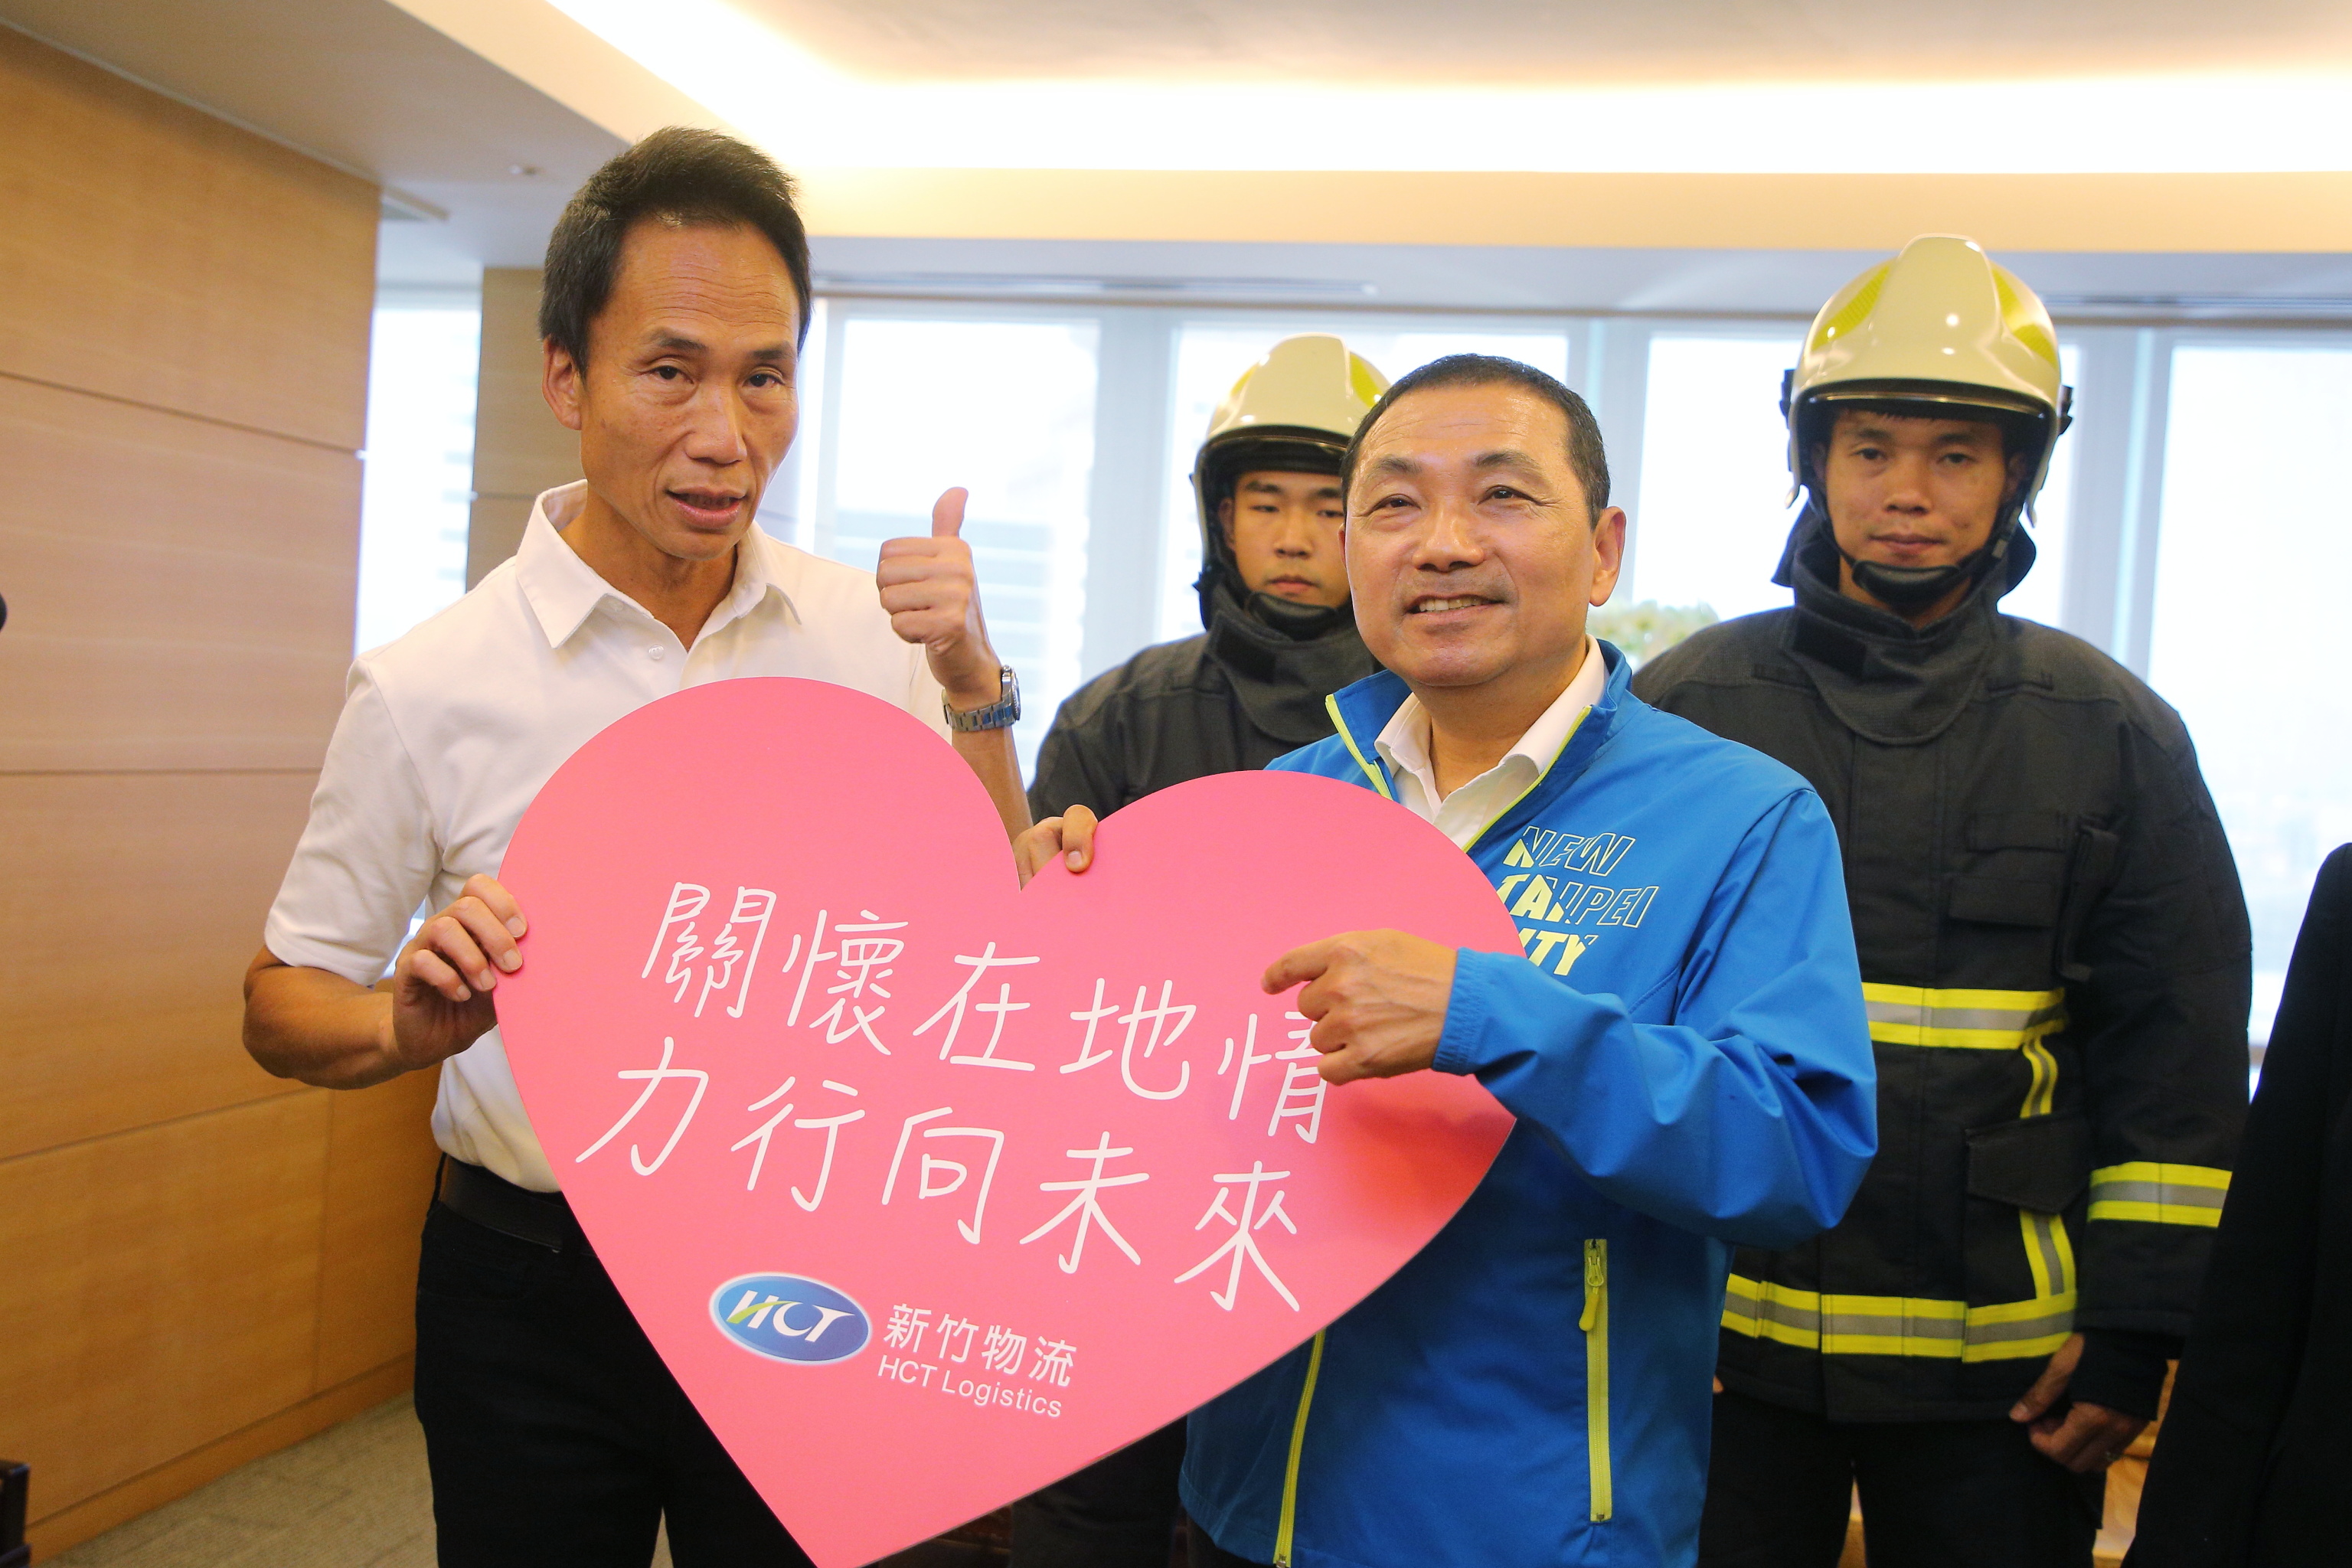 侯友宜市長感謝新竹物流長期熱心公益造福社會。